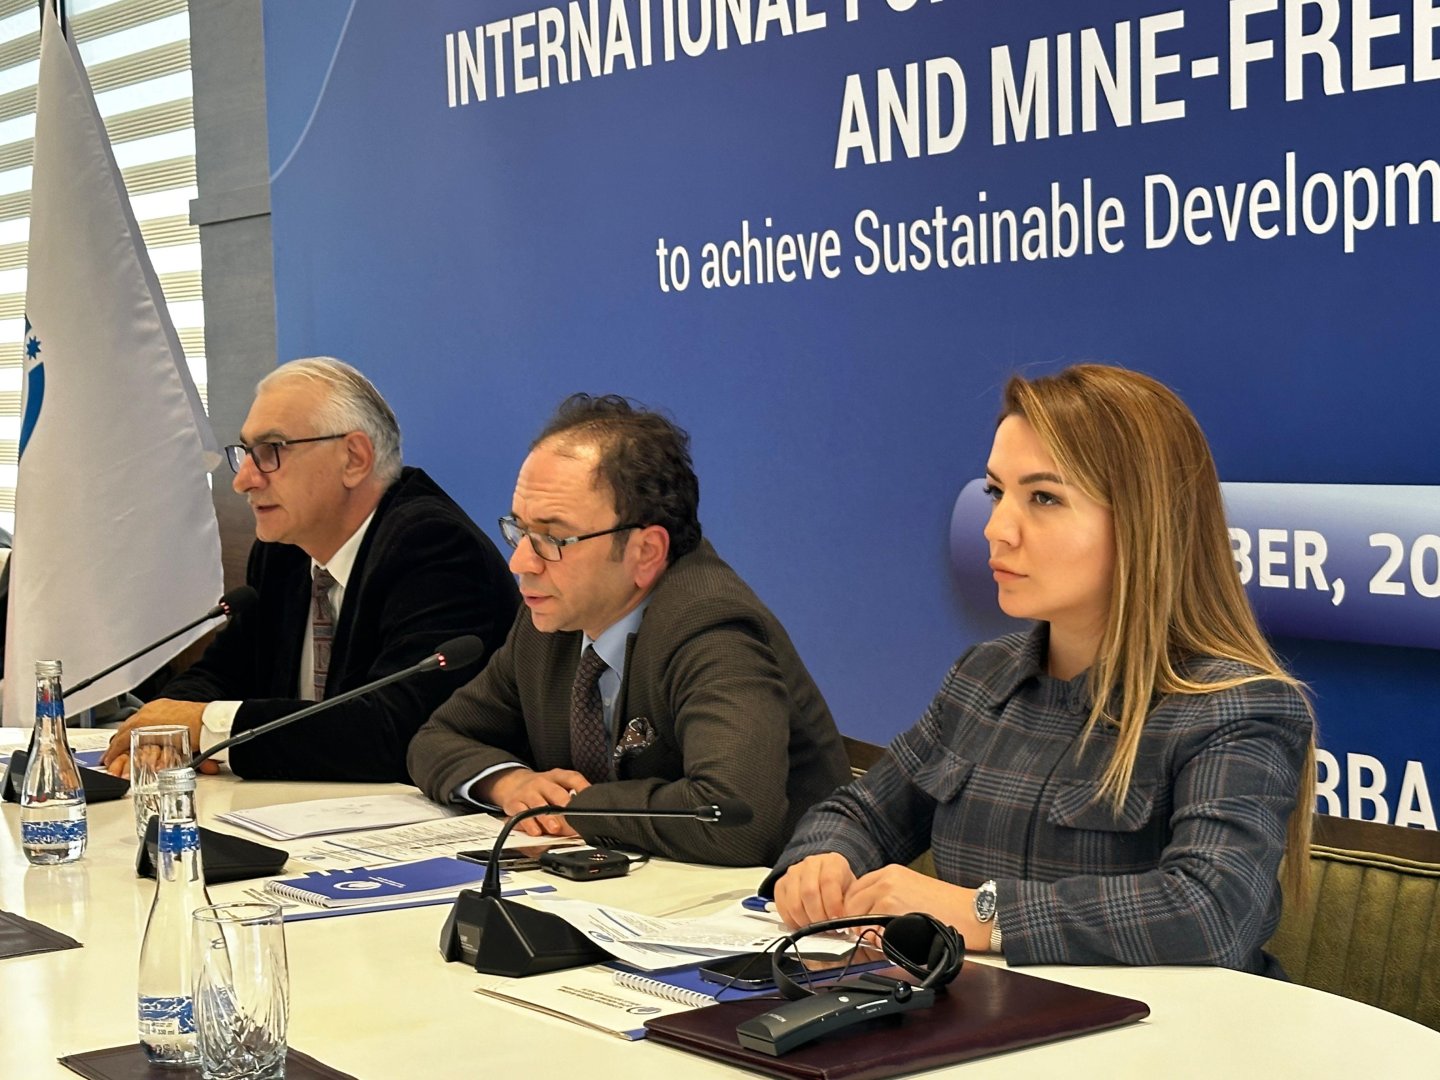 В Агдаме проходит Международный форум на тему минной проблемы (ФОТО)